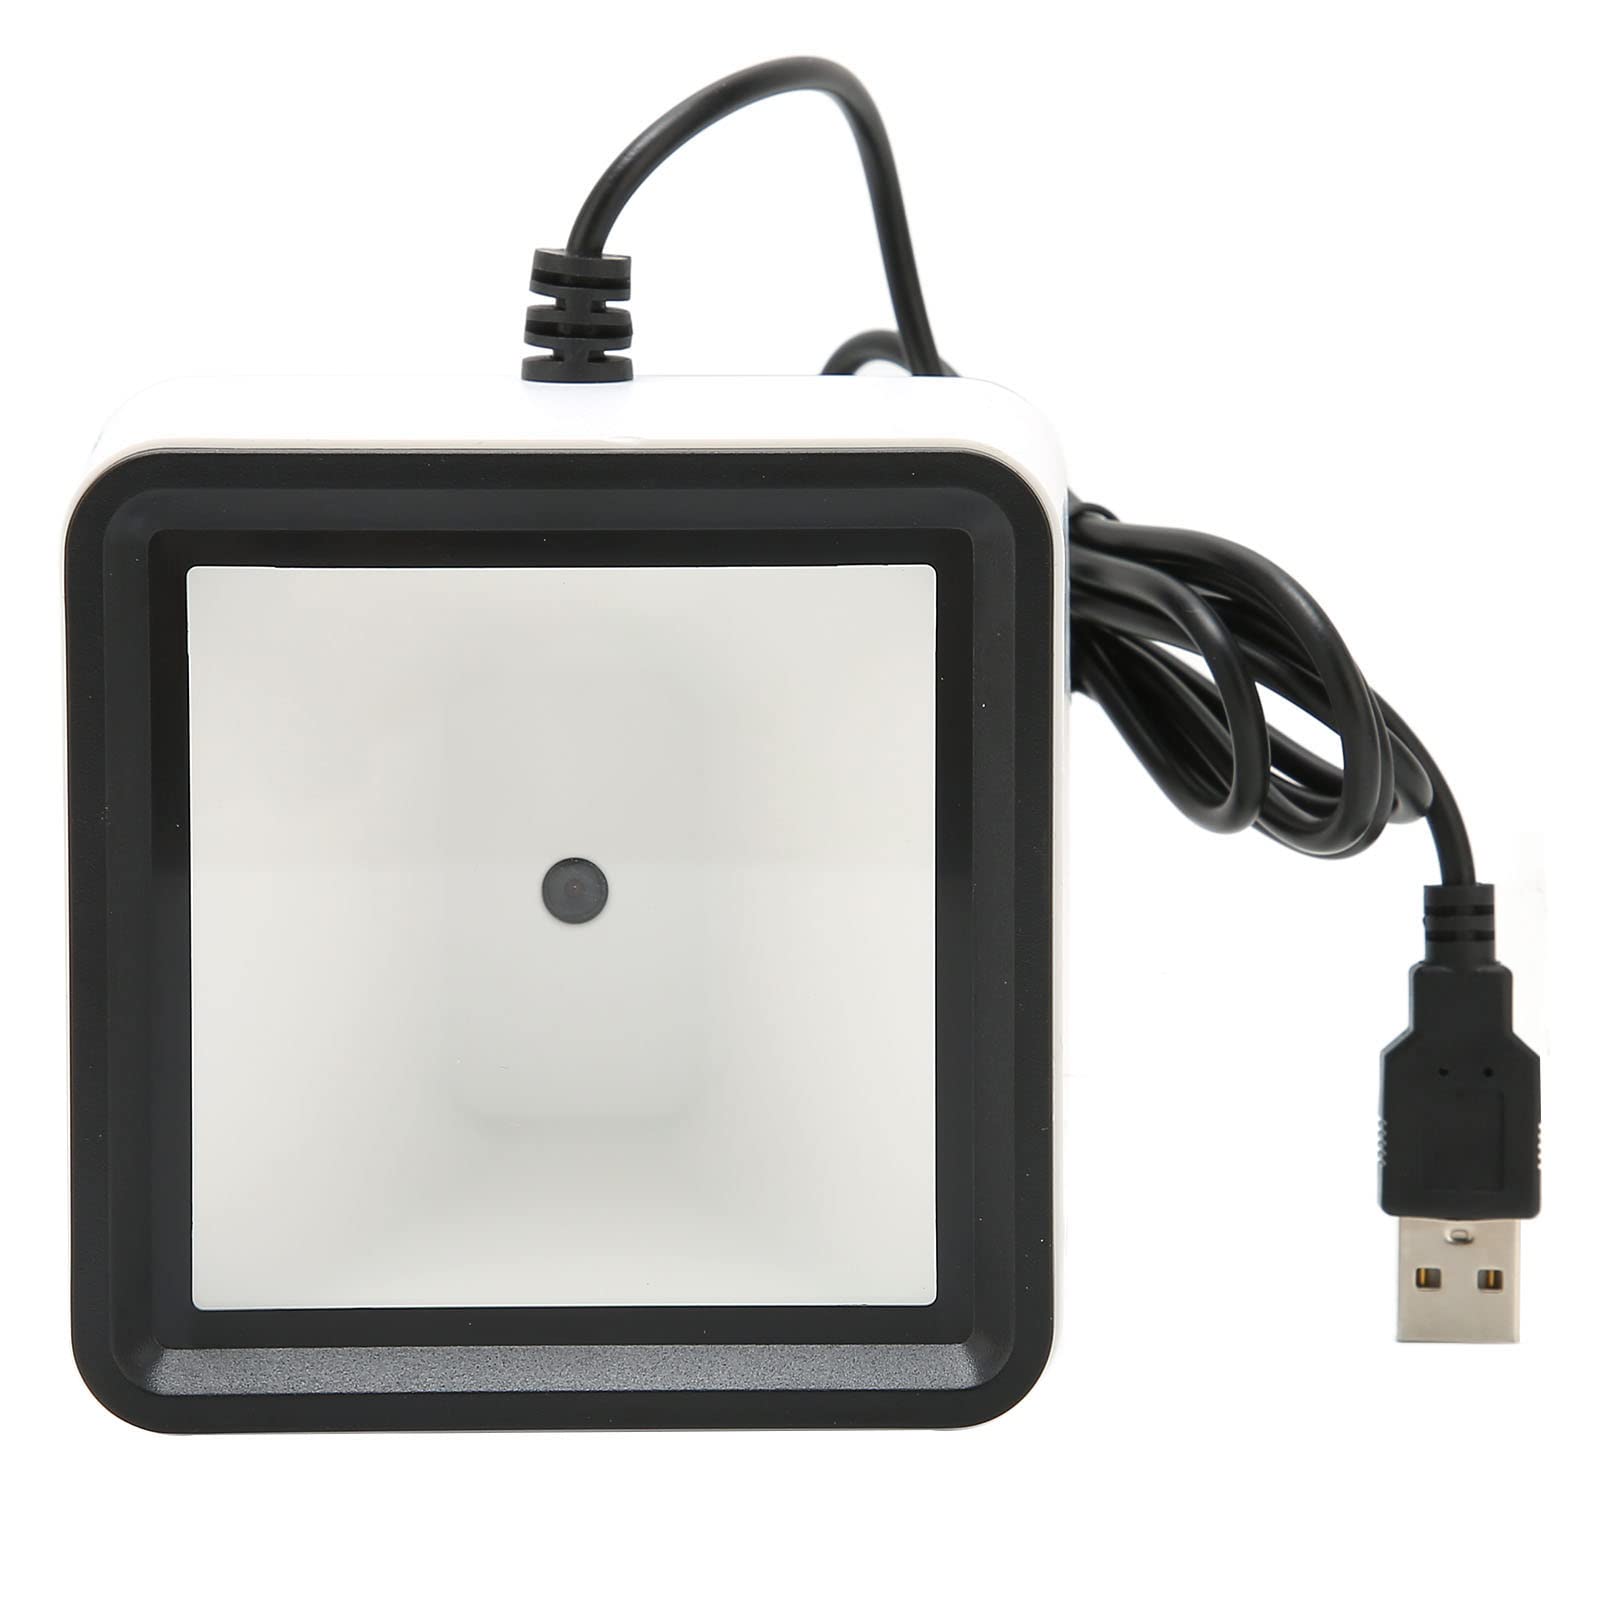 2D 1D QR штрих-код сканер,USB проводной настольный автоматика устройство считывания штрихового кода сканер,PC магазин склад для "свободные руки" настольный 